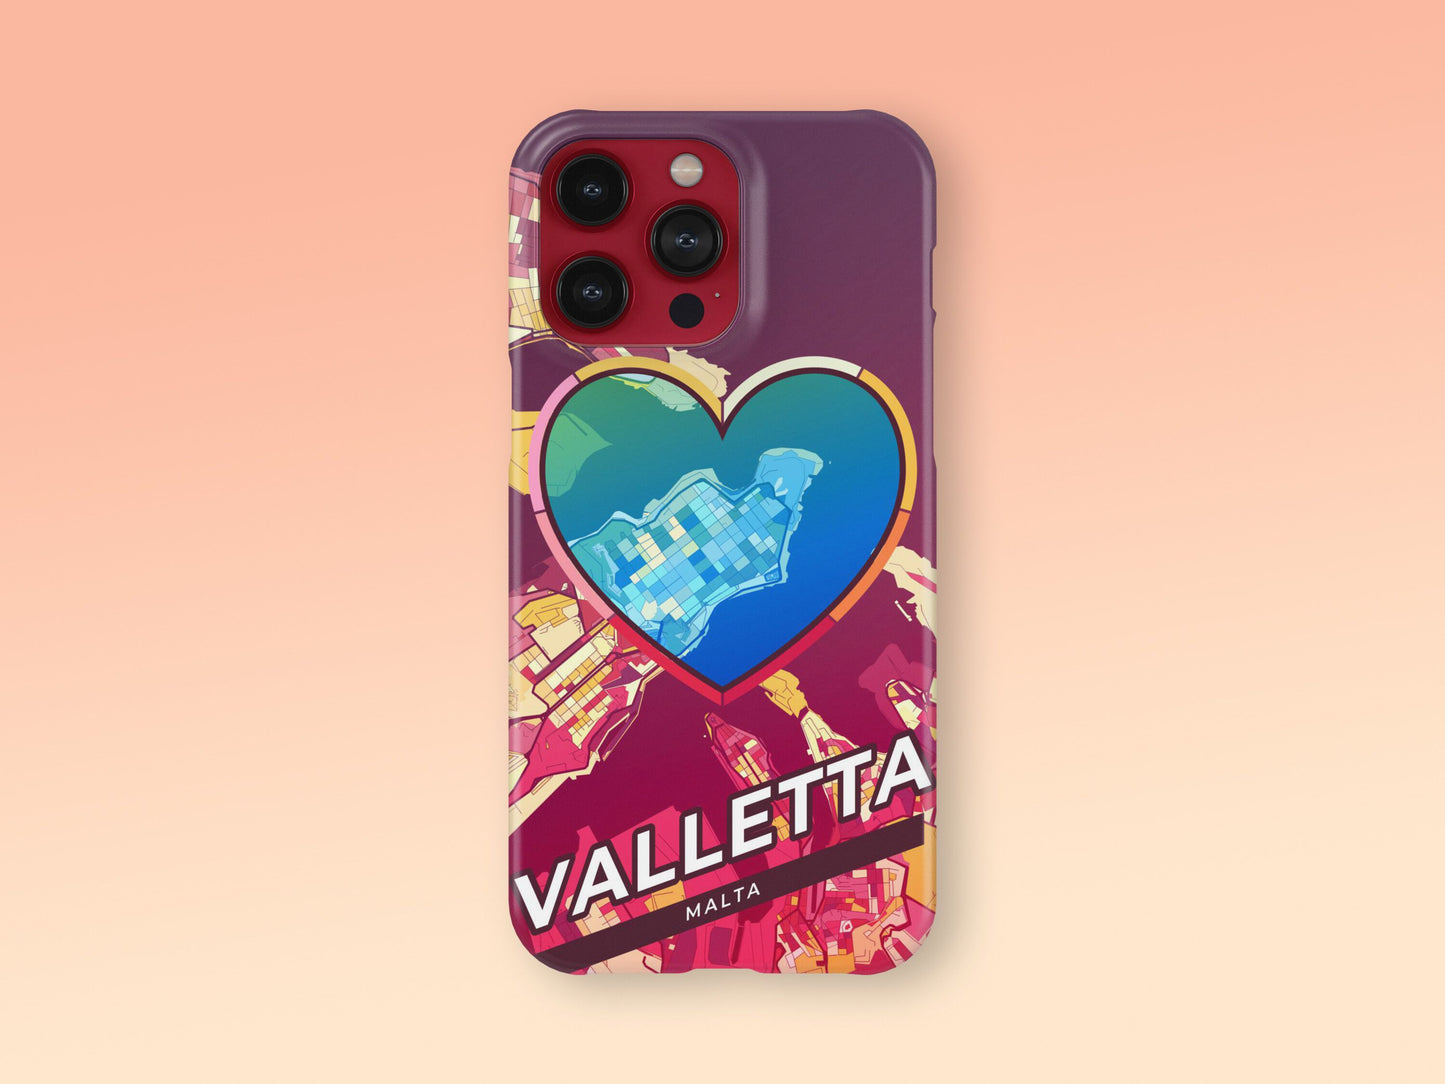 Valletta Malta slim phone case with colorful icon 2